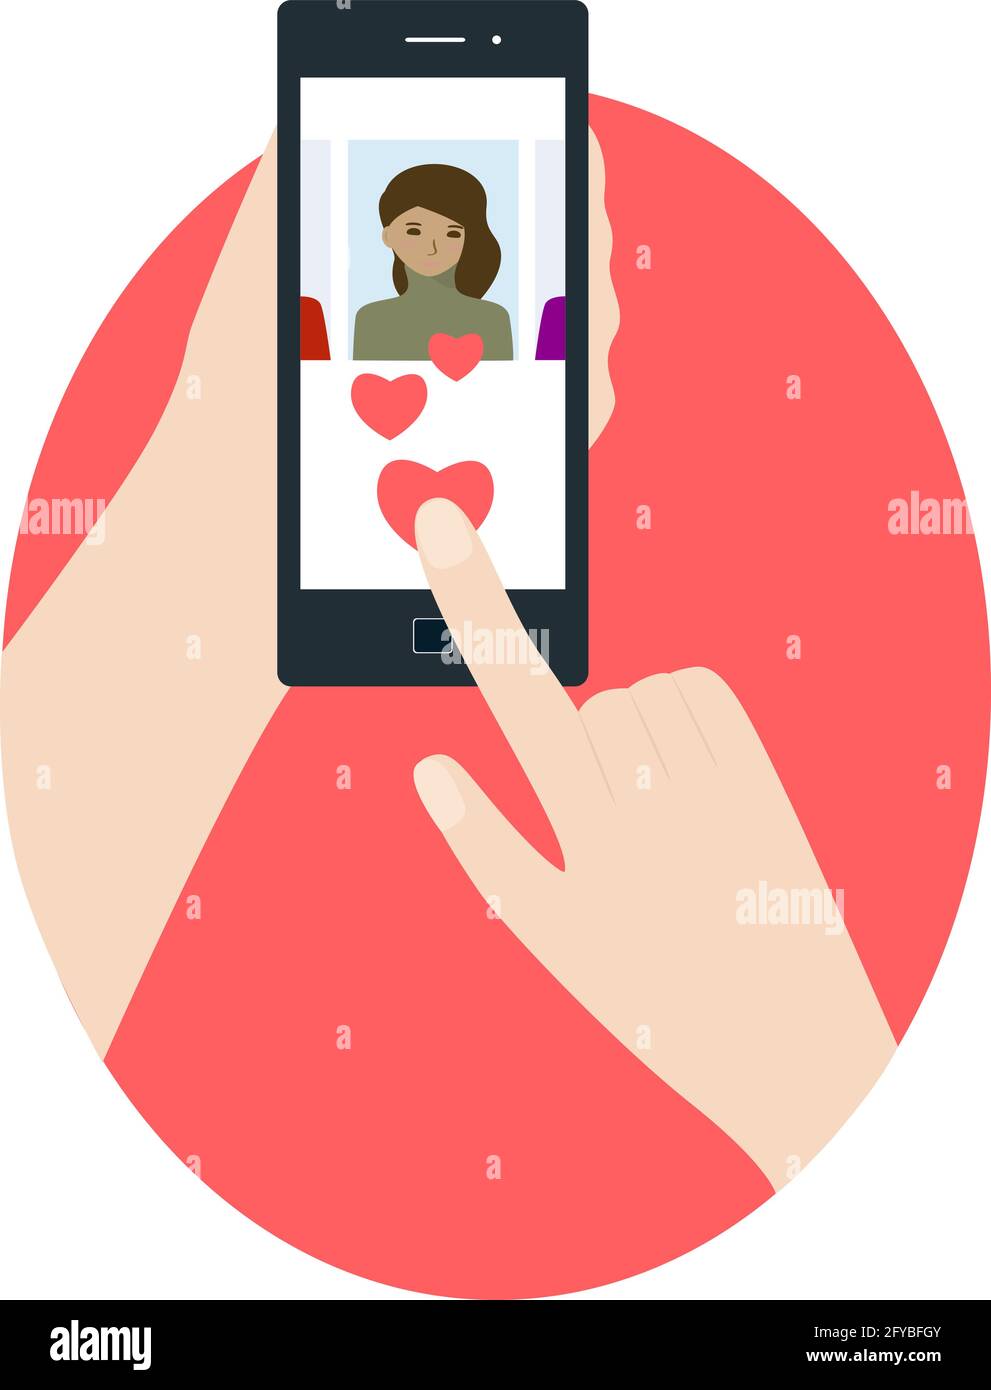 Menschliche Hand hält Smartphone und klickt auf Herz. Person, die die Online-Dating-App am Telefon nutzt. Mann und Frau auf der Suche nach Liebe und Beziehung. Online d Stock Vektor